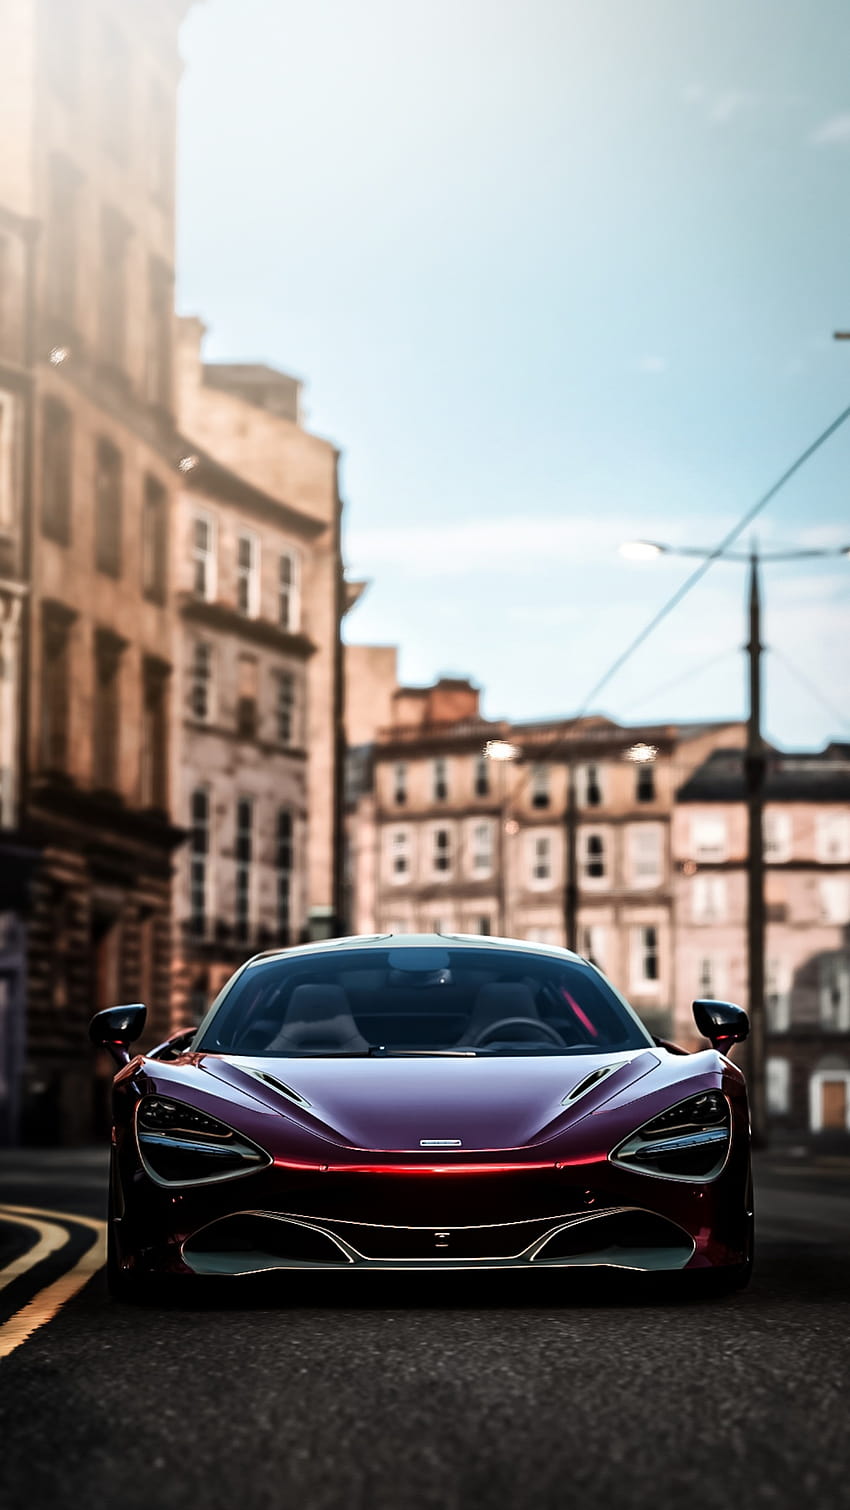 Bạn đang tìm kiếm hình nền McLaren 720S HD đẹp mắt để trang trí màn hình của mình? Chúng tôi cung cấp những bức ảnh hoàn hảo, sắc nét và sống động, phù hợp với mọi phong cách và thị hiếu. Hãy tải về ngay và cùng tận hưởng sự đẹp của dòng xe McLaren.